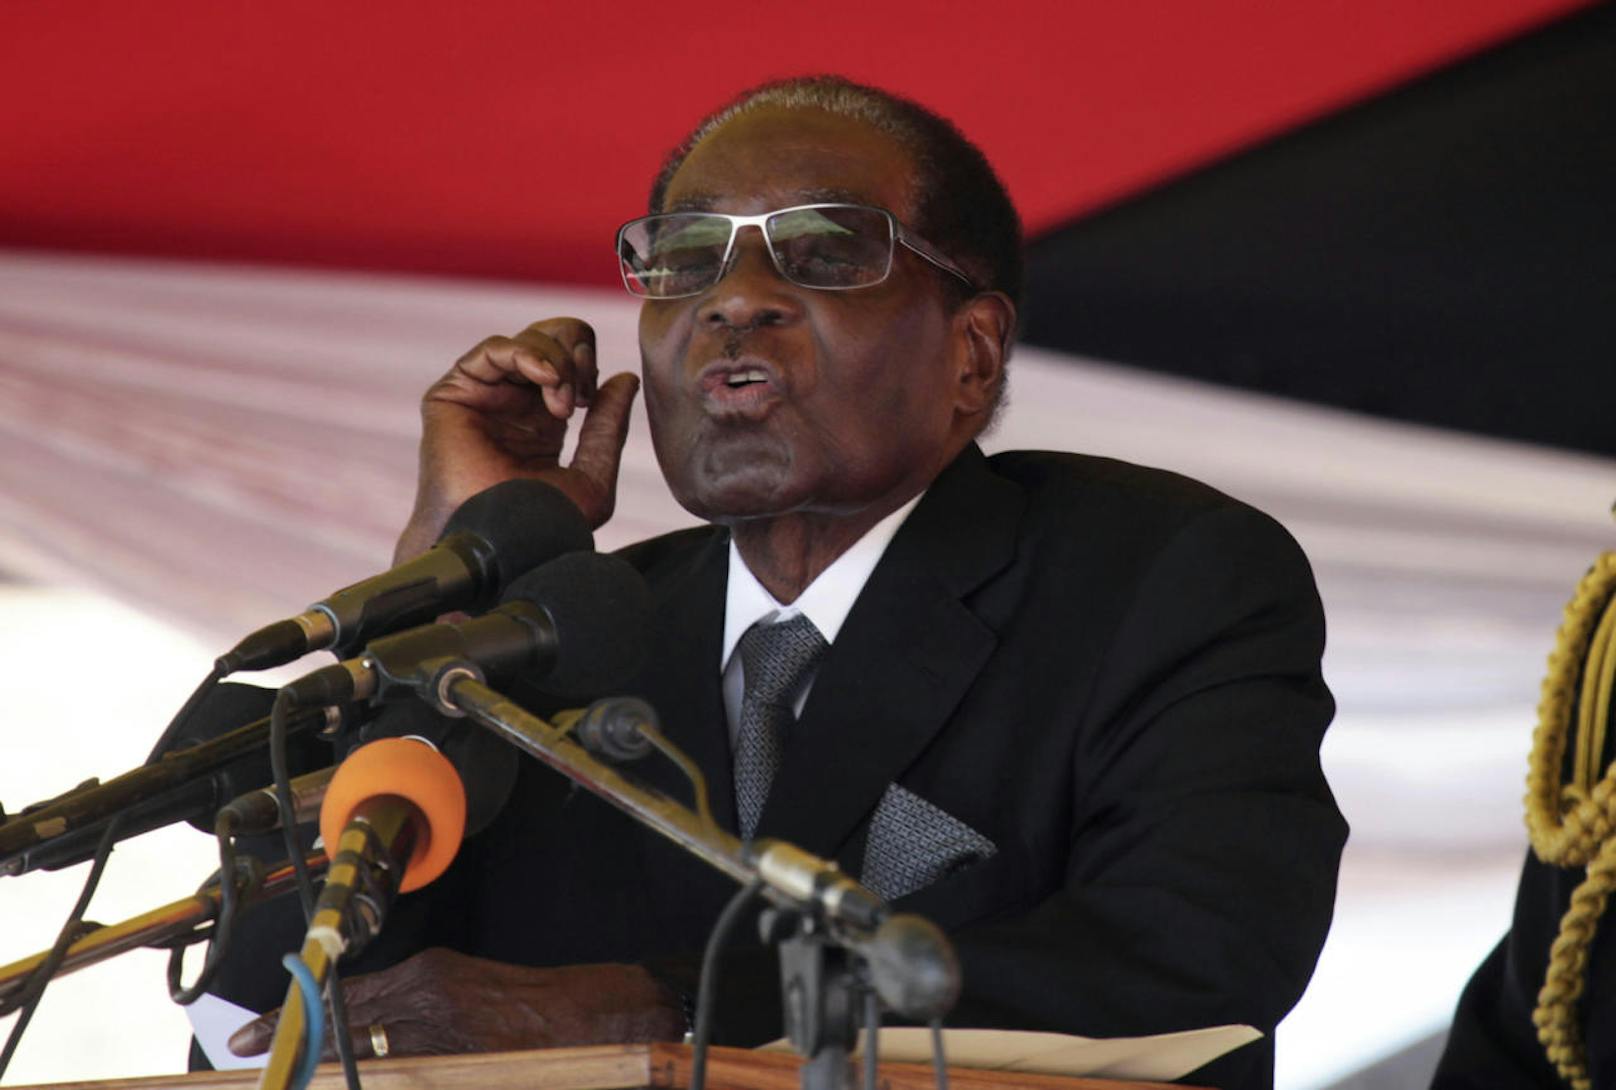 <b>21. November 2017:</b> Nach fast vier Jahrzehnten an der Macht ist Zimbabwes Staatschef <b>Robert Mugabe </b>(93) zurückgetreten. Jacob Mudenda unterbrach das Amtsenthebungsverfahren, um den Abgeordneten mitzuteilen, dass ihm Mugabe in einem Brief seinen Rücktritt mit sofortiger Wirkung mitgeteilt habe. Der Saal brach daraufhin in Jubel aus. 

<b>Mehr Infos: </b> <a href="https://www.heute.at/welt/news/story/Robert-Mugabe-tritt-zurueck-54478600" target="_blank">Robert Mugabe tritt als Staatschef zurück</a>